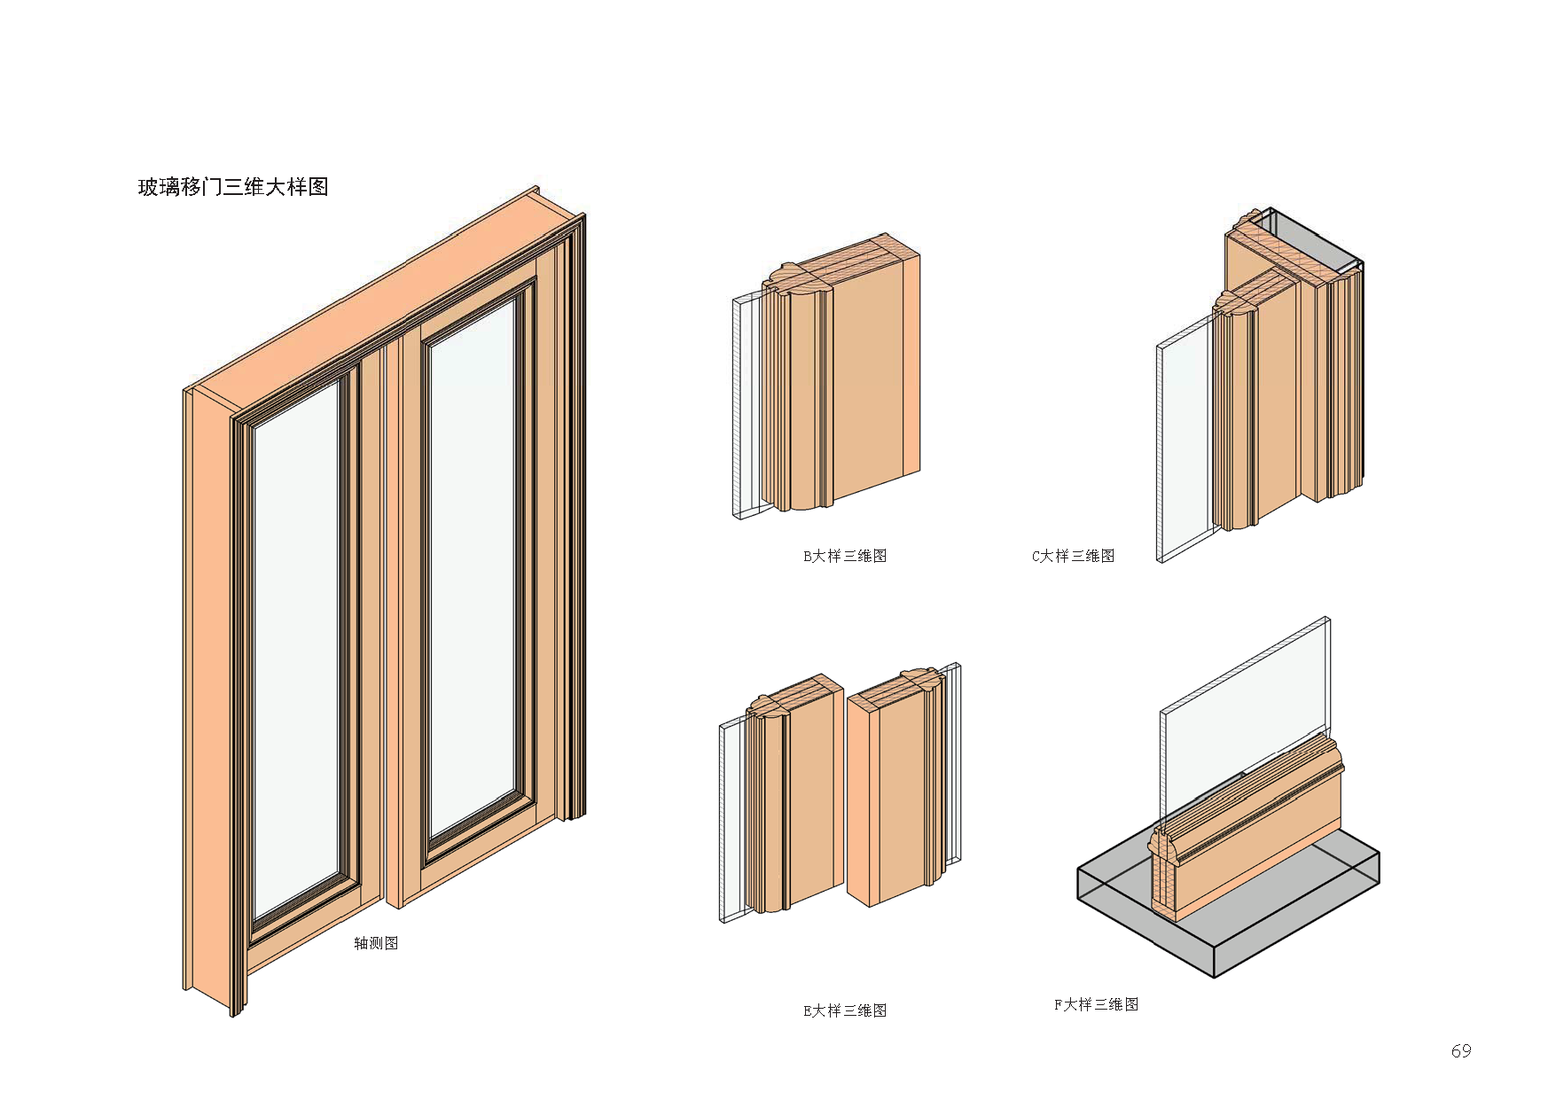 《整木设计系列之木门篇全解析》-- 一本书了解家装工装木门构造节点